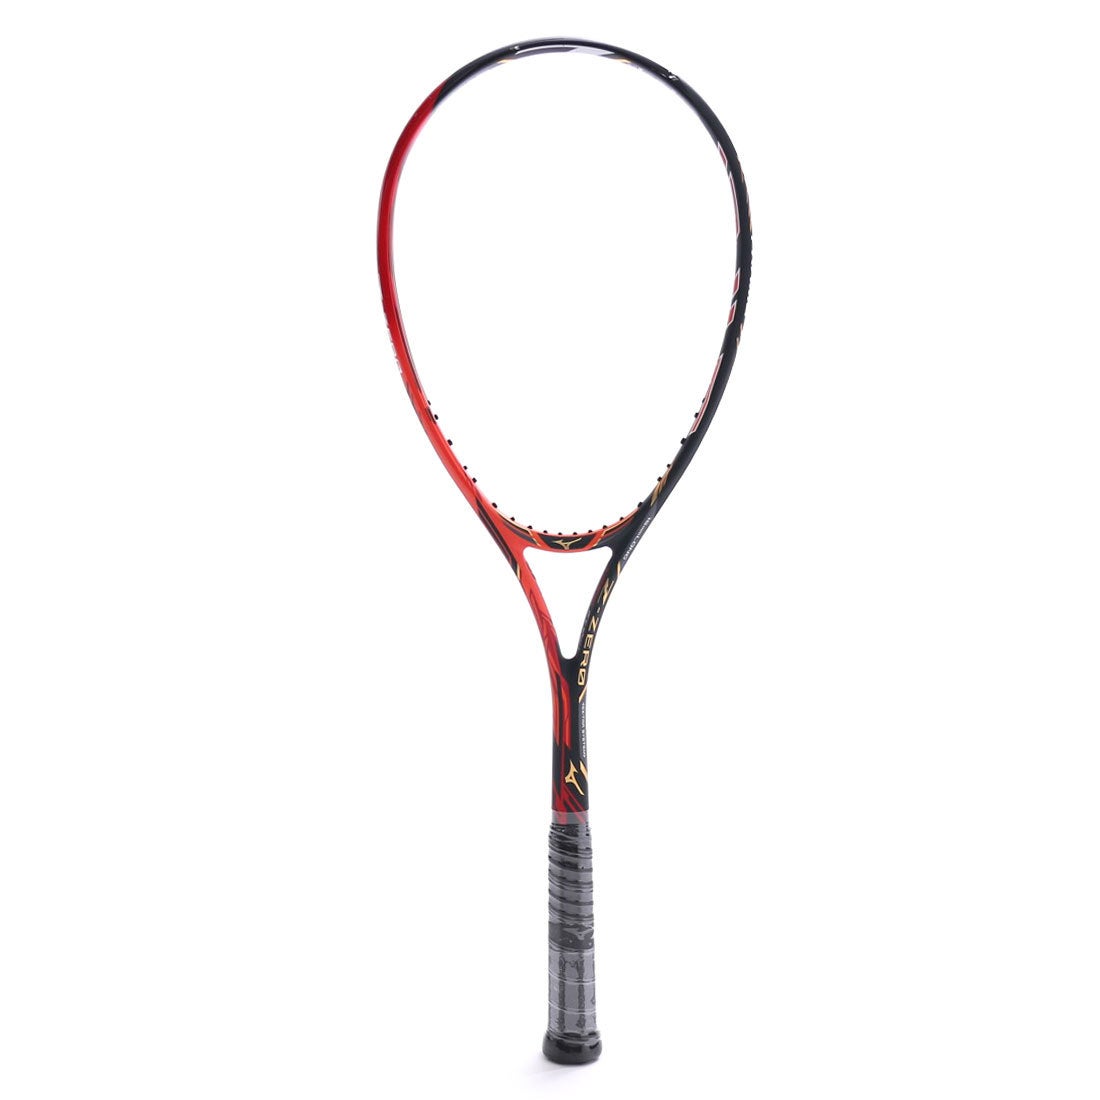 ミズノ MIZUNO ユニセックス 軟式テニス 未張りラケット XYST Z-ZERO(ジストゼットゼロ) 63JTN73262 247